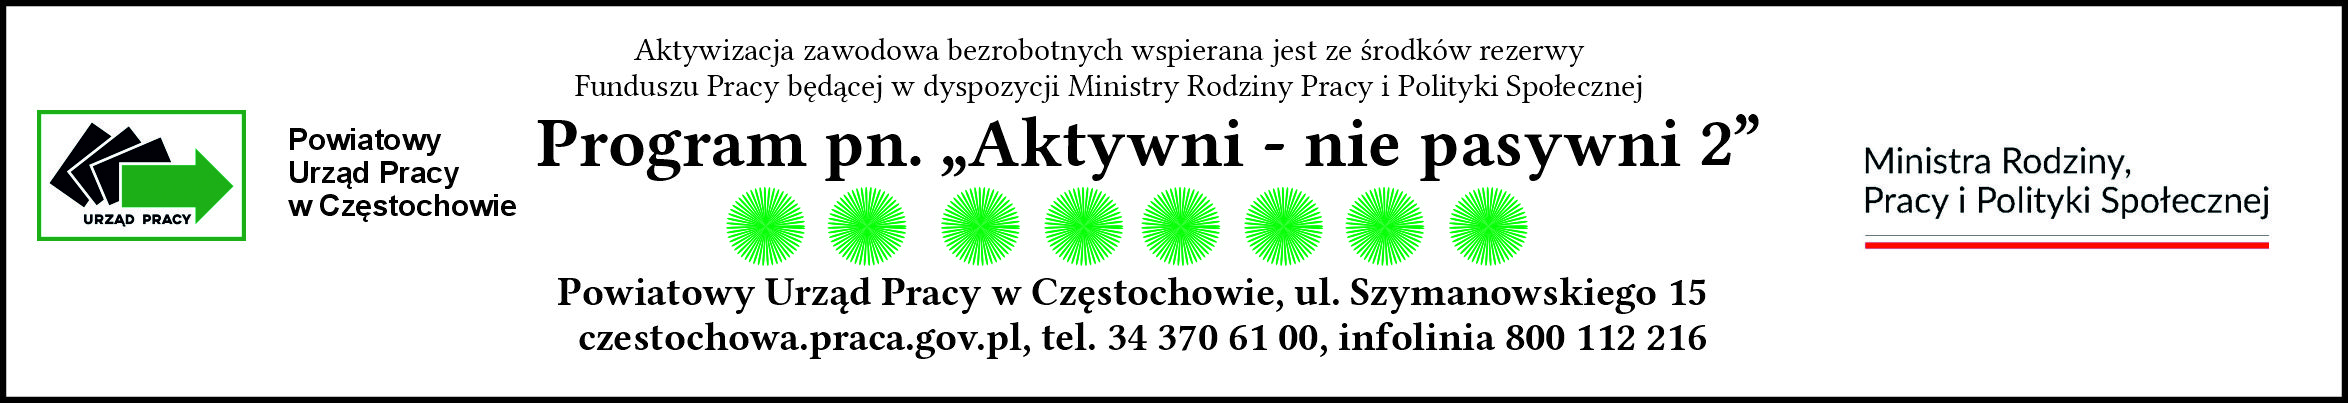 Logo Programu Aktywni - nie pasywni 2